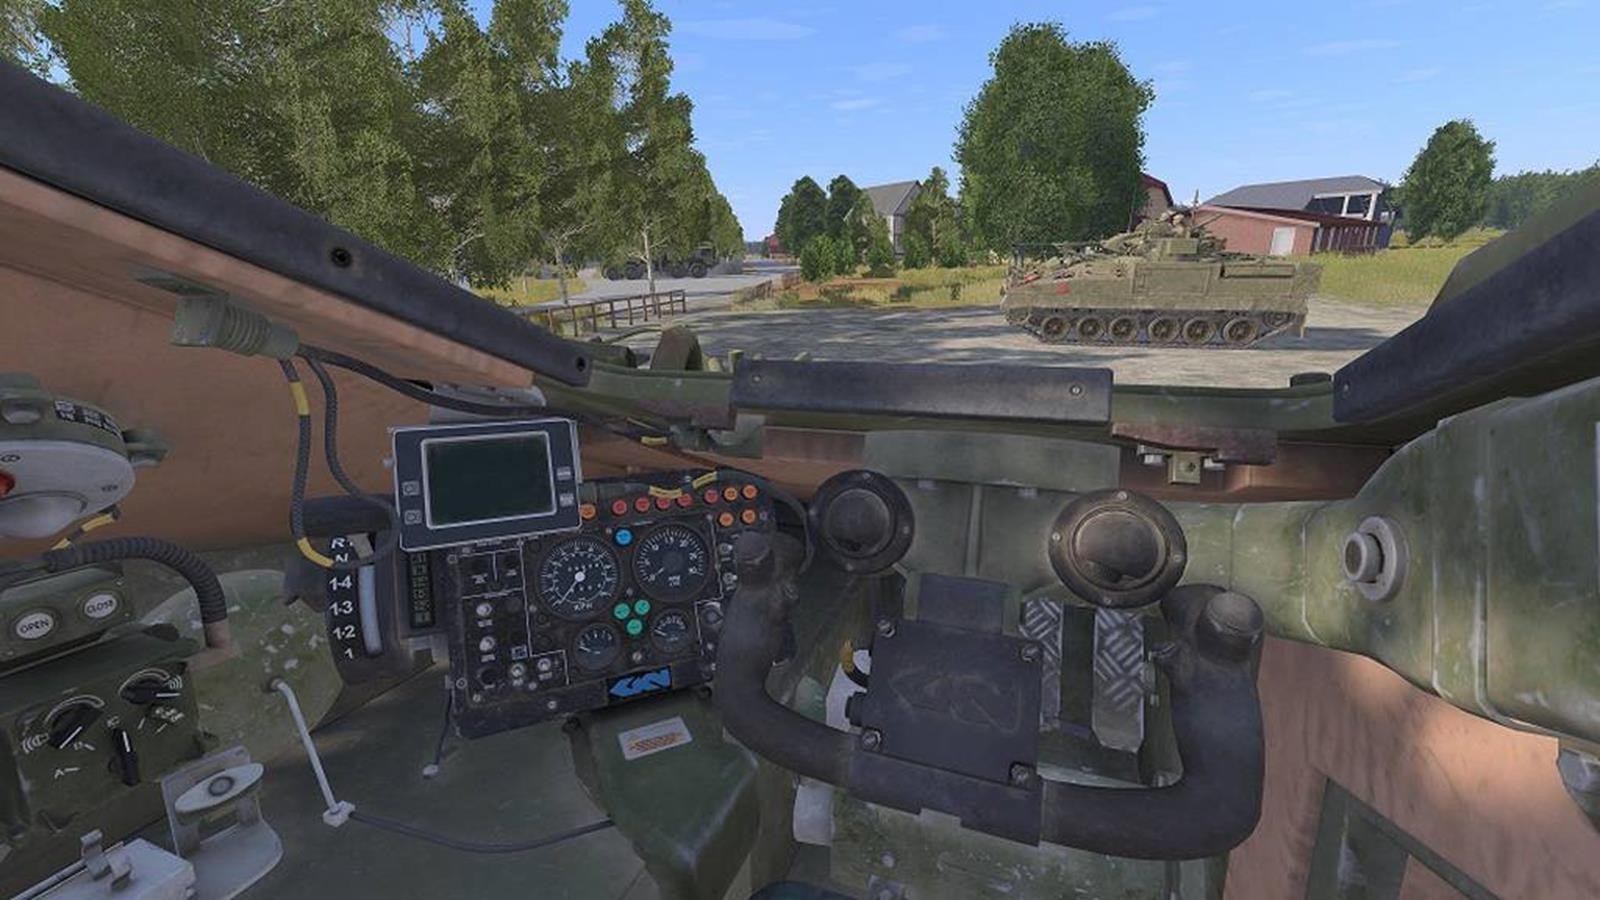 BAE Systems kupiło firmę tworzącą symulacje treningowe dla wojska. To praktycznie gra wideo dla żołnierzy